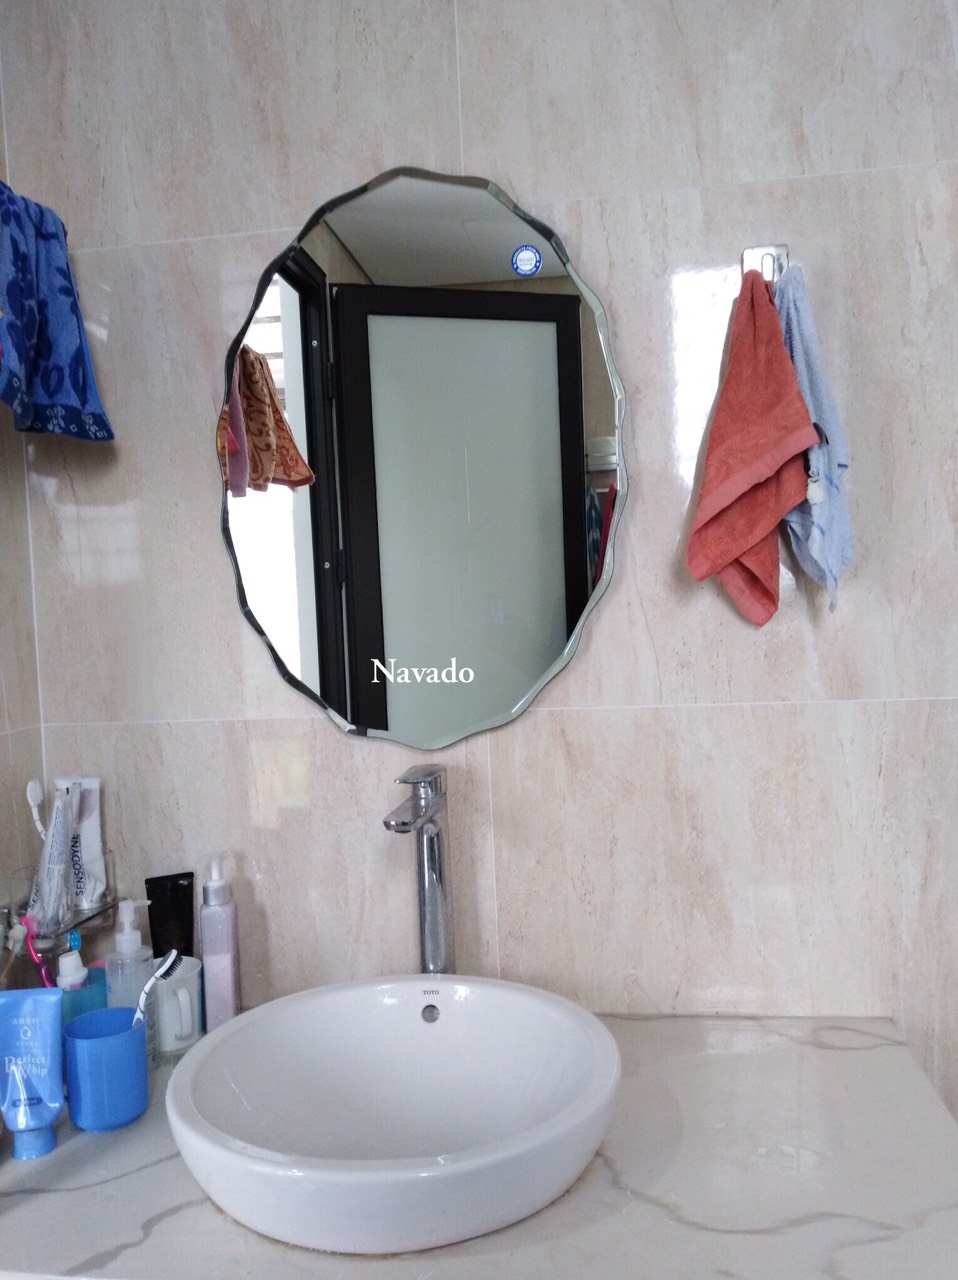 Gương phòng tắm elip Navado là sự kết hợp tuyệt vời giữa thiết kế hiện đại và công nghệ tiên tiến. Sản phẩm đem lại không gian tối ưu và độc đáo cho căn phòng tắm của bạn. Với kiểu dáng đẹp mắt, sản phẩm này sẽ làm cho không gian vệ sinh của bạn trở nên sang trọng và tối tân hơn bao giờ hết.